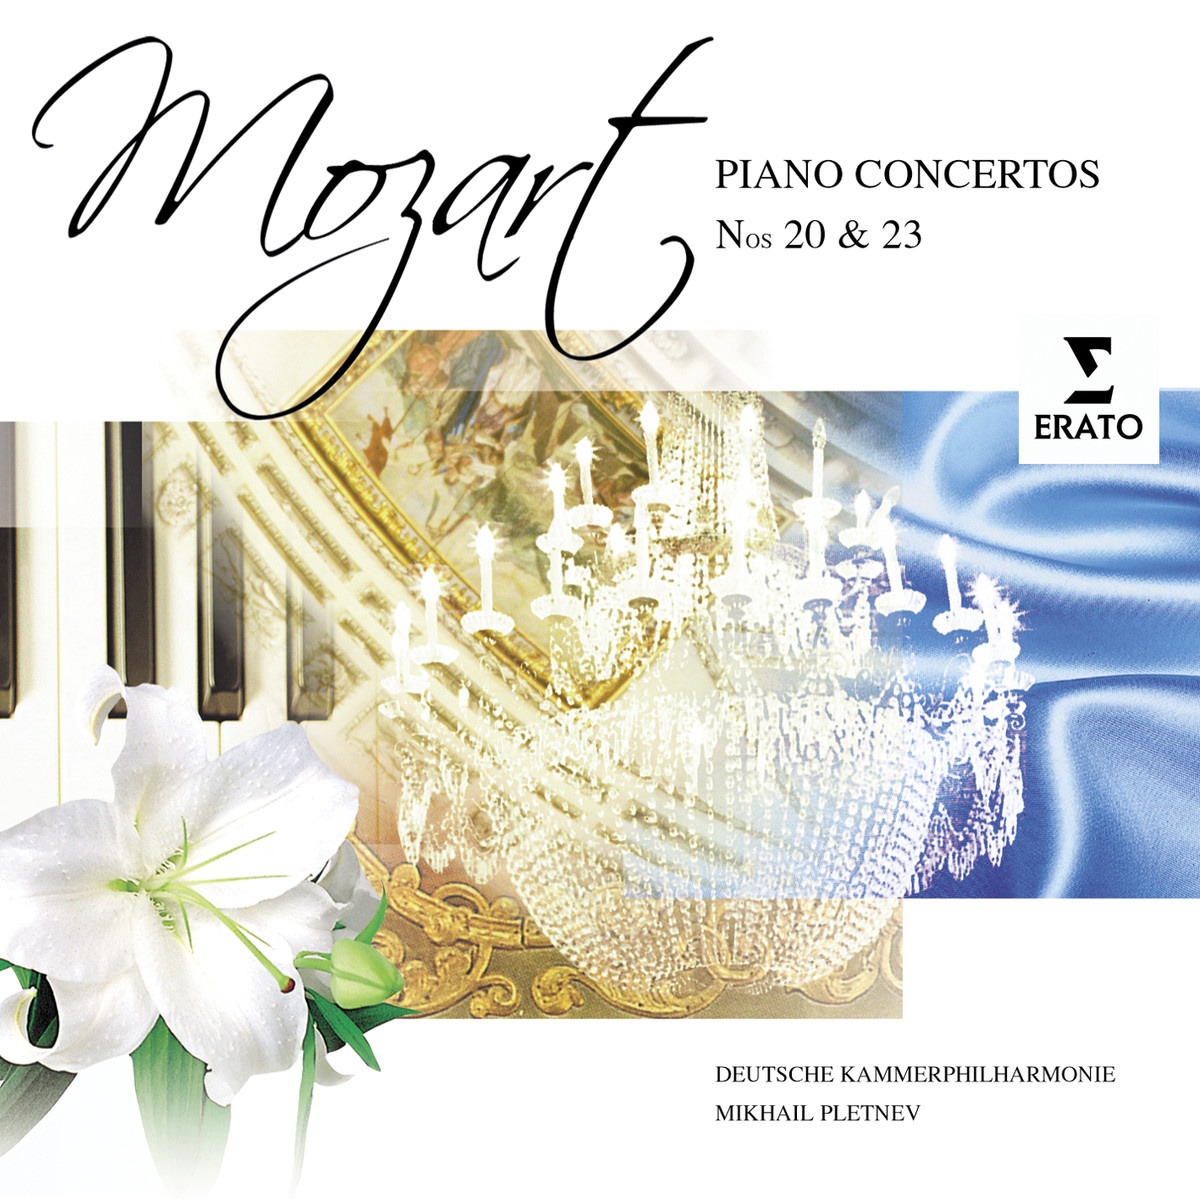 Piano Concerto No. 20 in D minor K466 (Cadenzas by Beethoven): III. Allegro assai - Cadenza - Tempo I